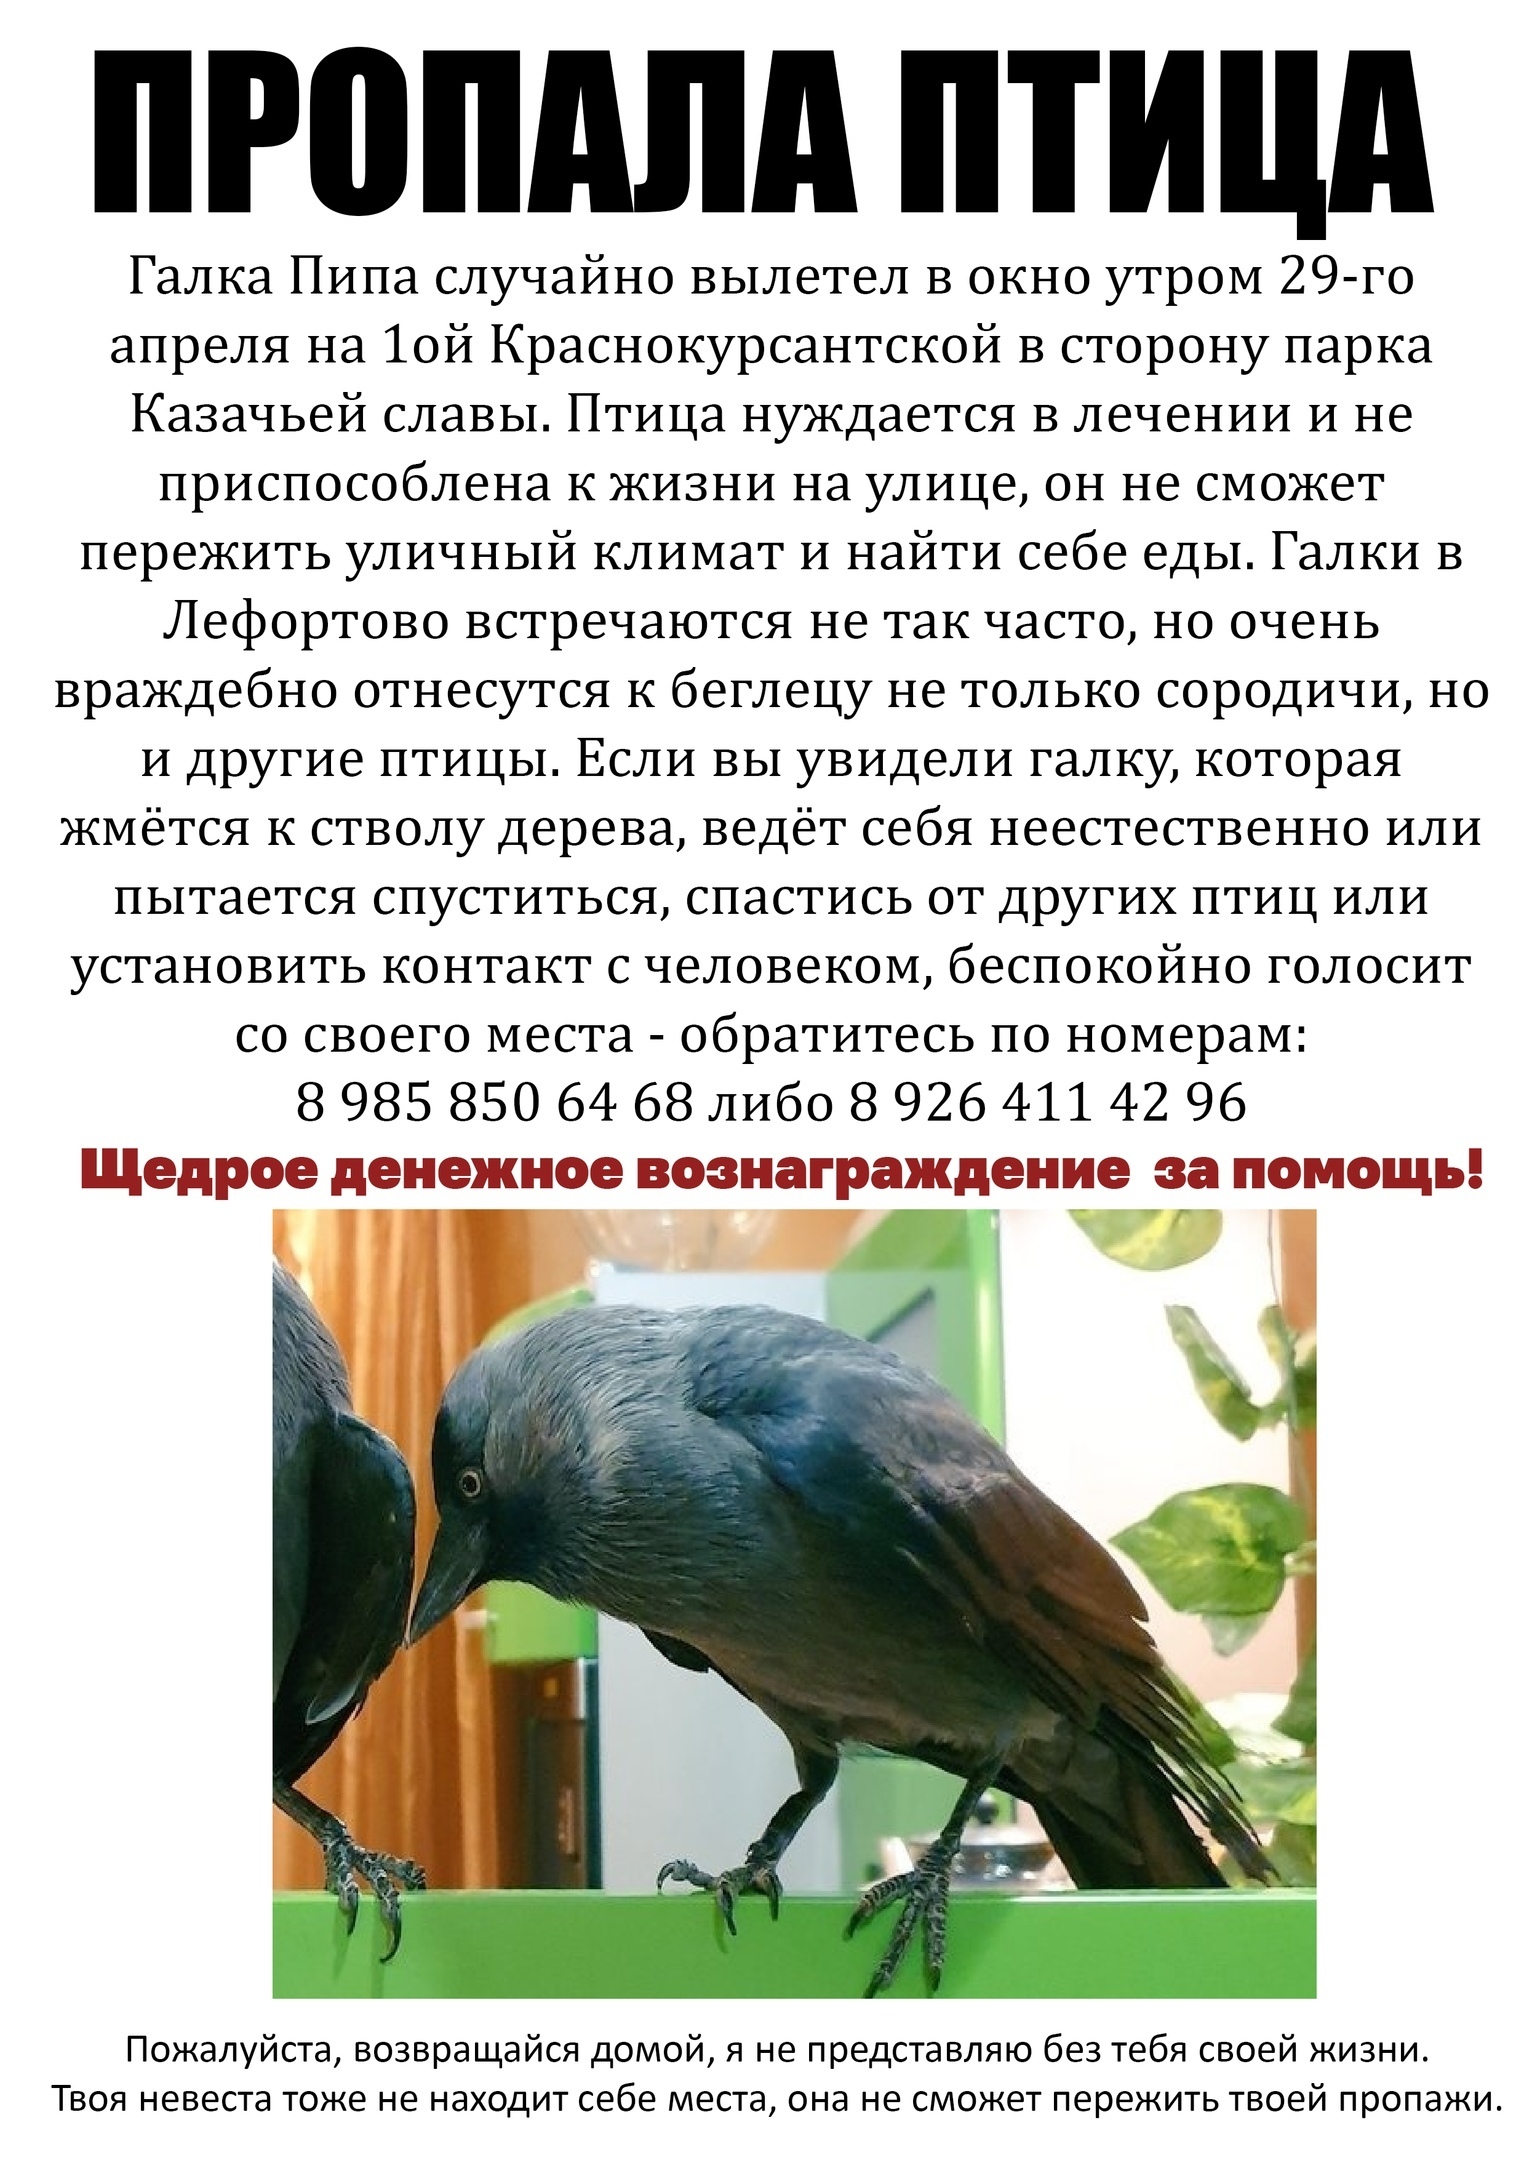 Пропало да и птички тоже. Пропавшие птицы. Исчезающие птицы Москвы. Галки в Москве птицы. Птица нету.